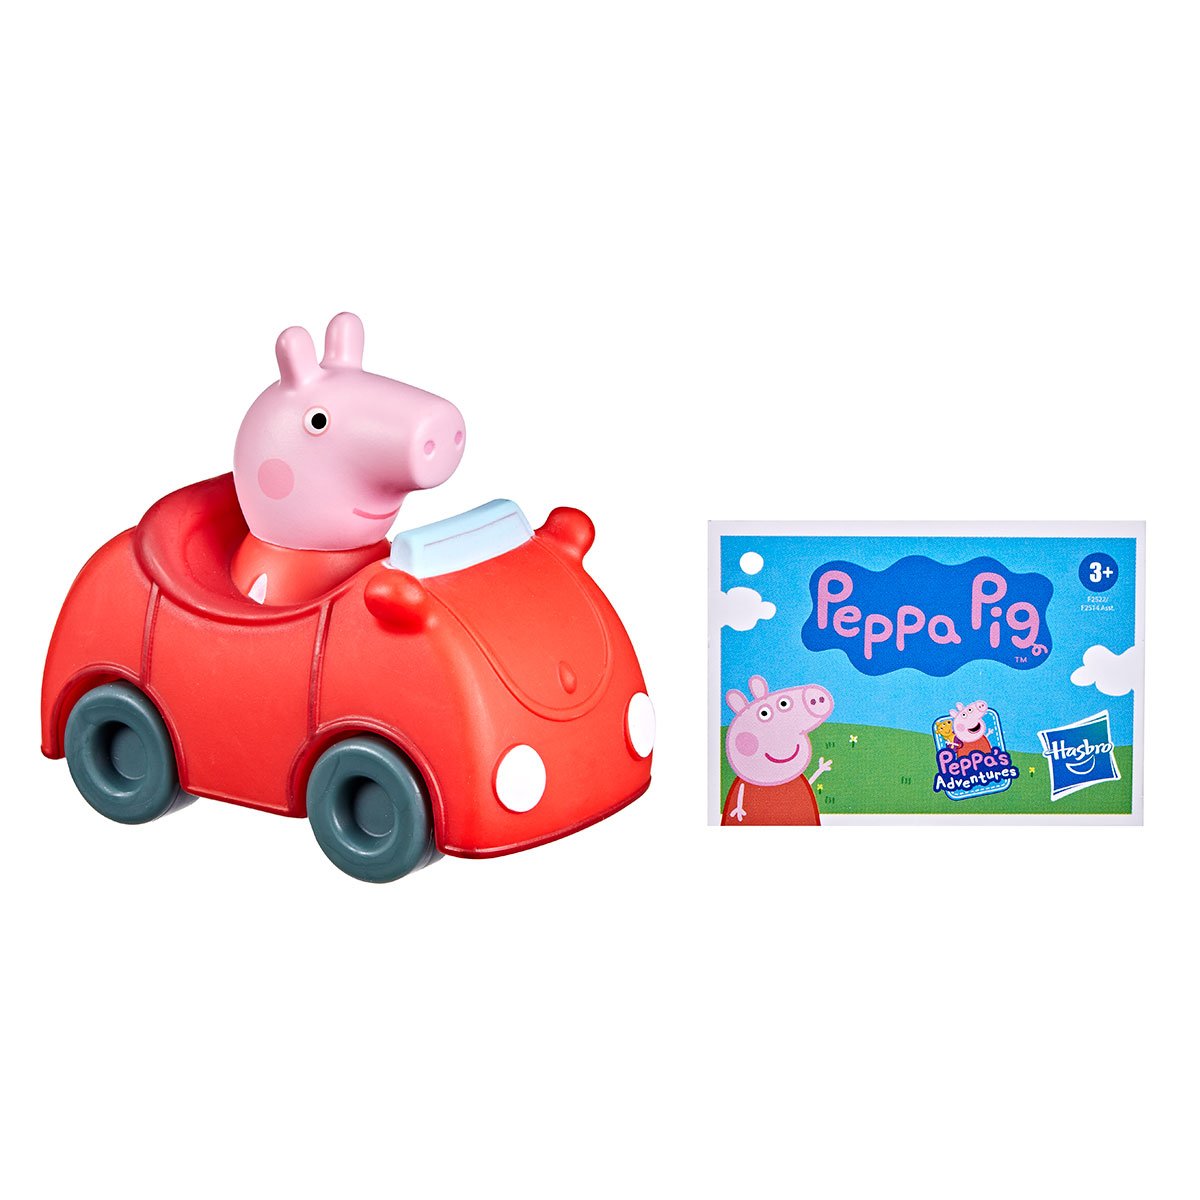 Мини-машинка Peppa Pig Пеппа в машине (F2522) - фото 2